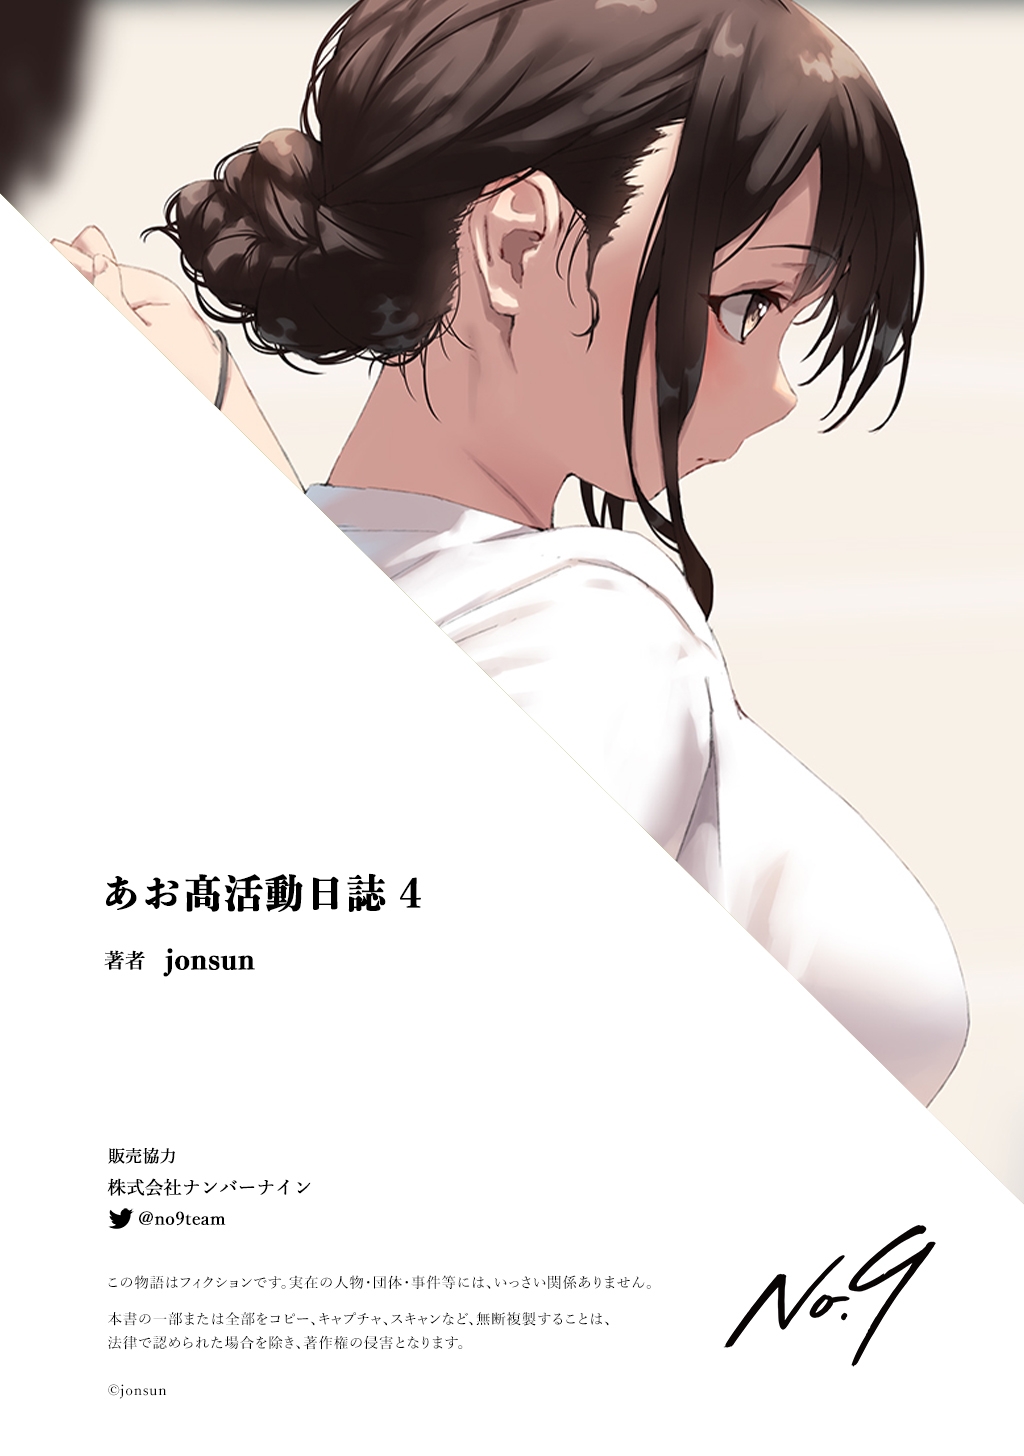 [jonsun] Aoitori High School Illustrations 4 37